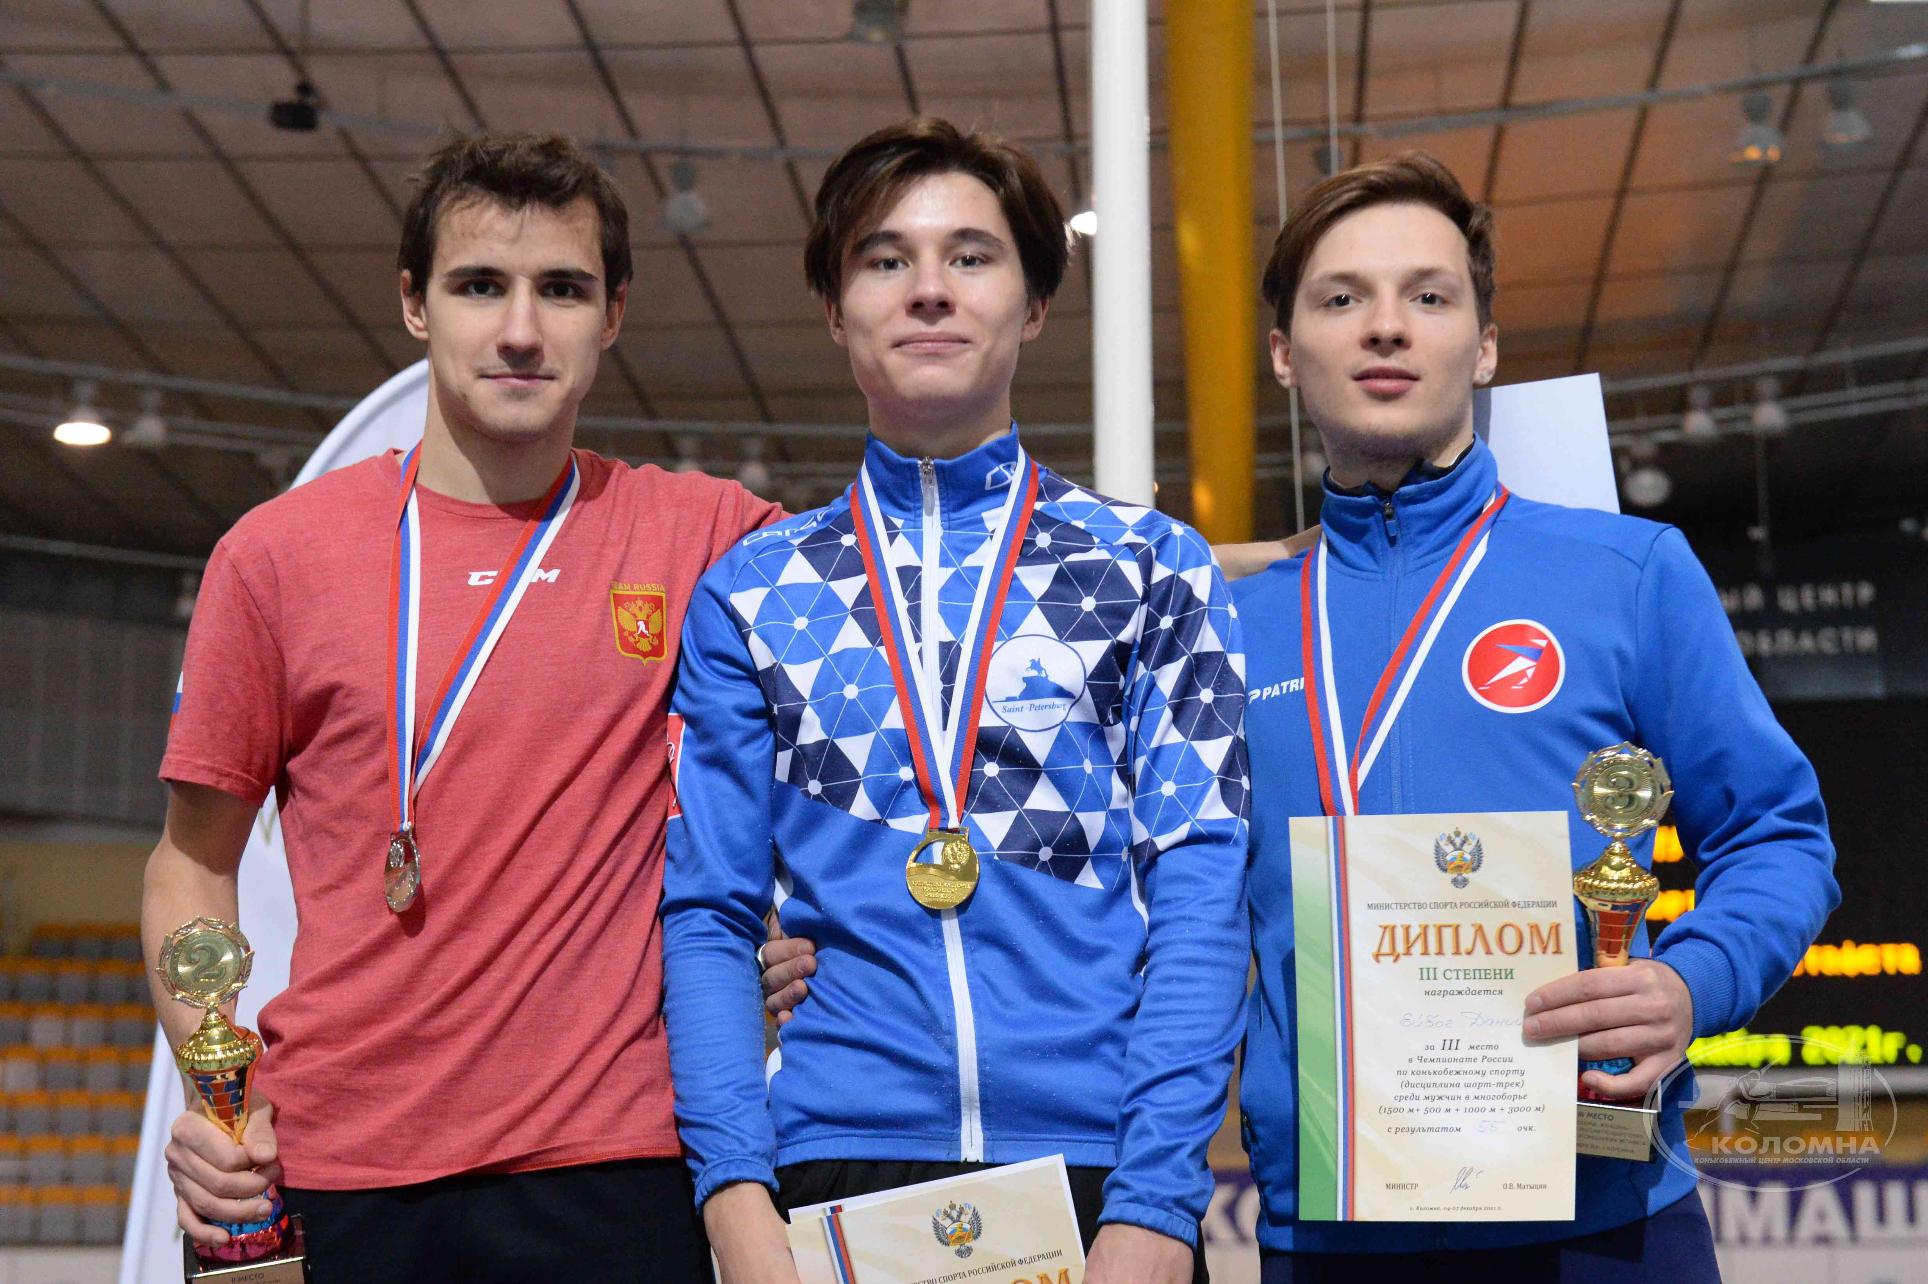 Даниил Ейбог стал призером Чемпионата России по шорт-треку 